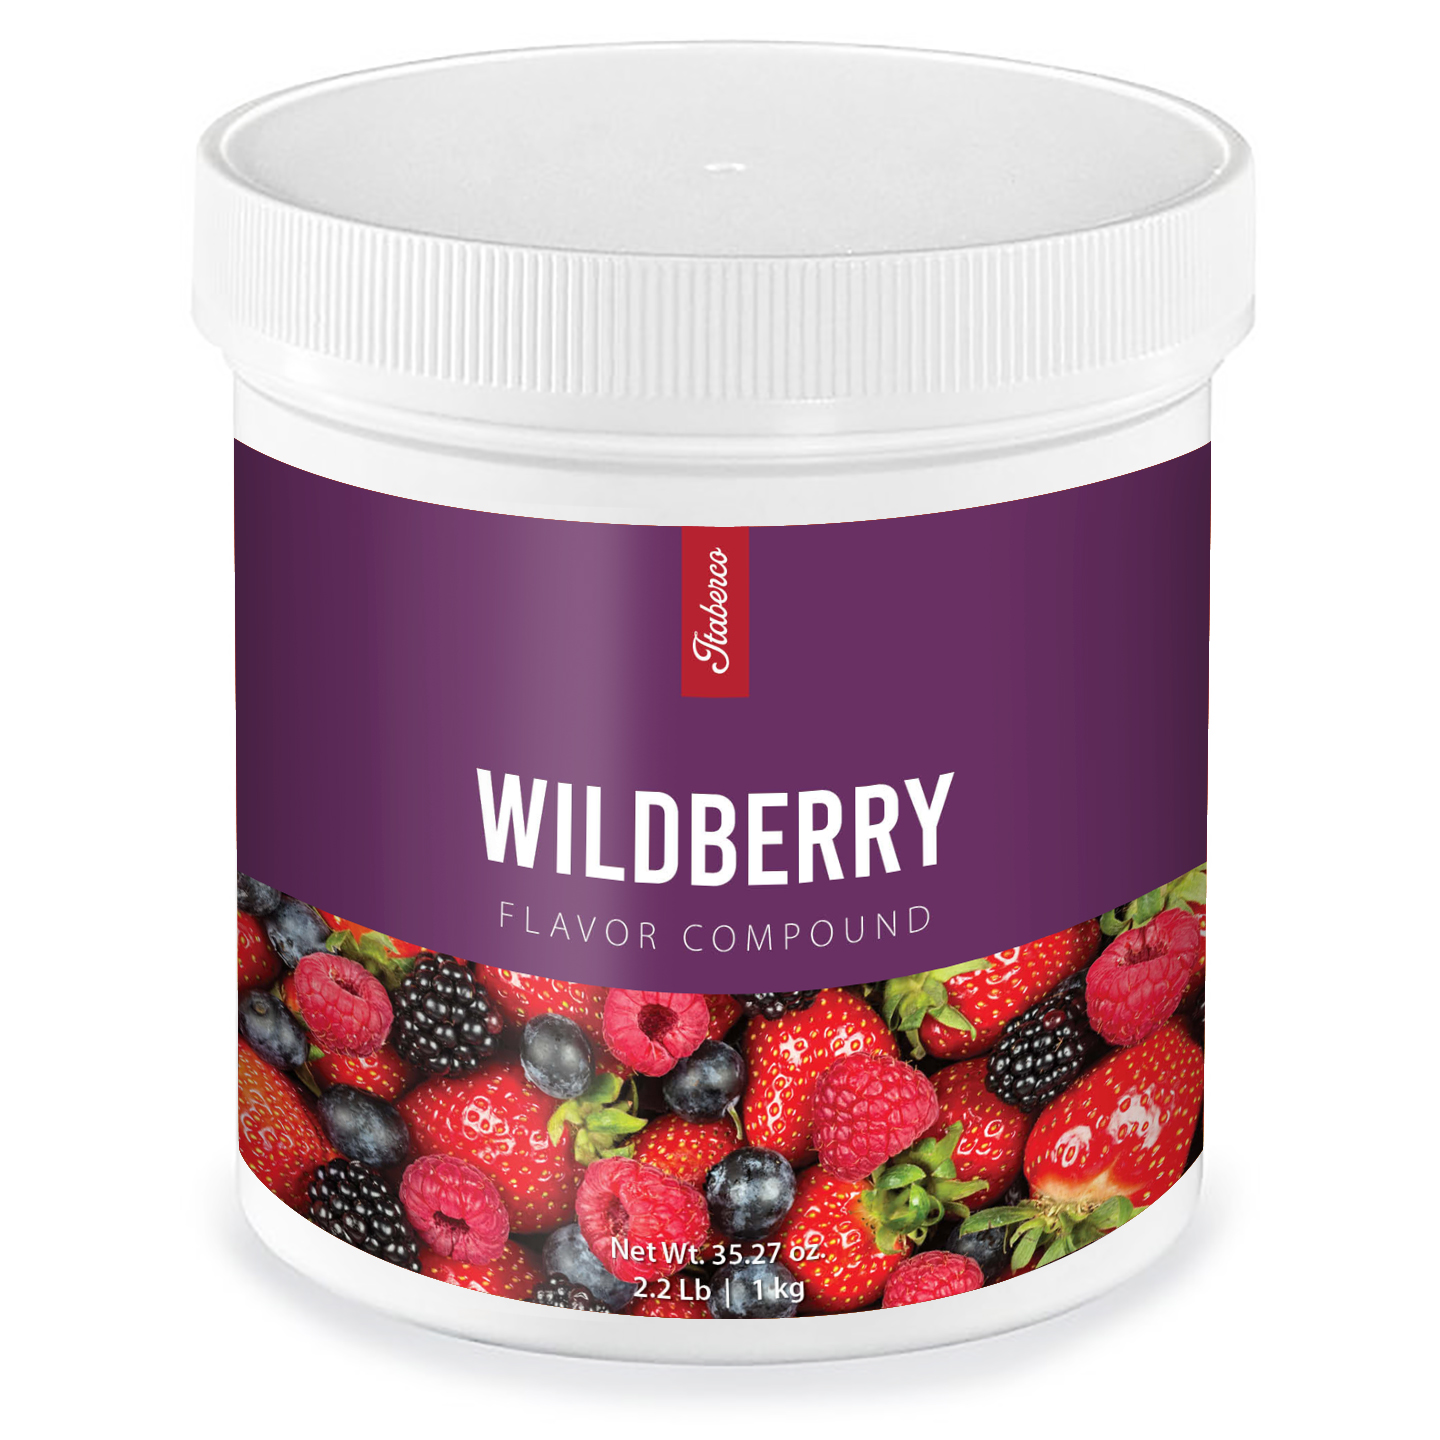 Wild berry Flavor Compound